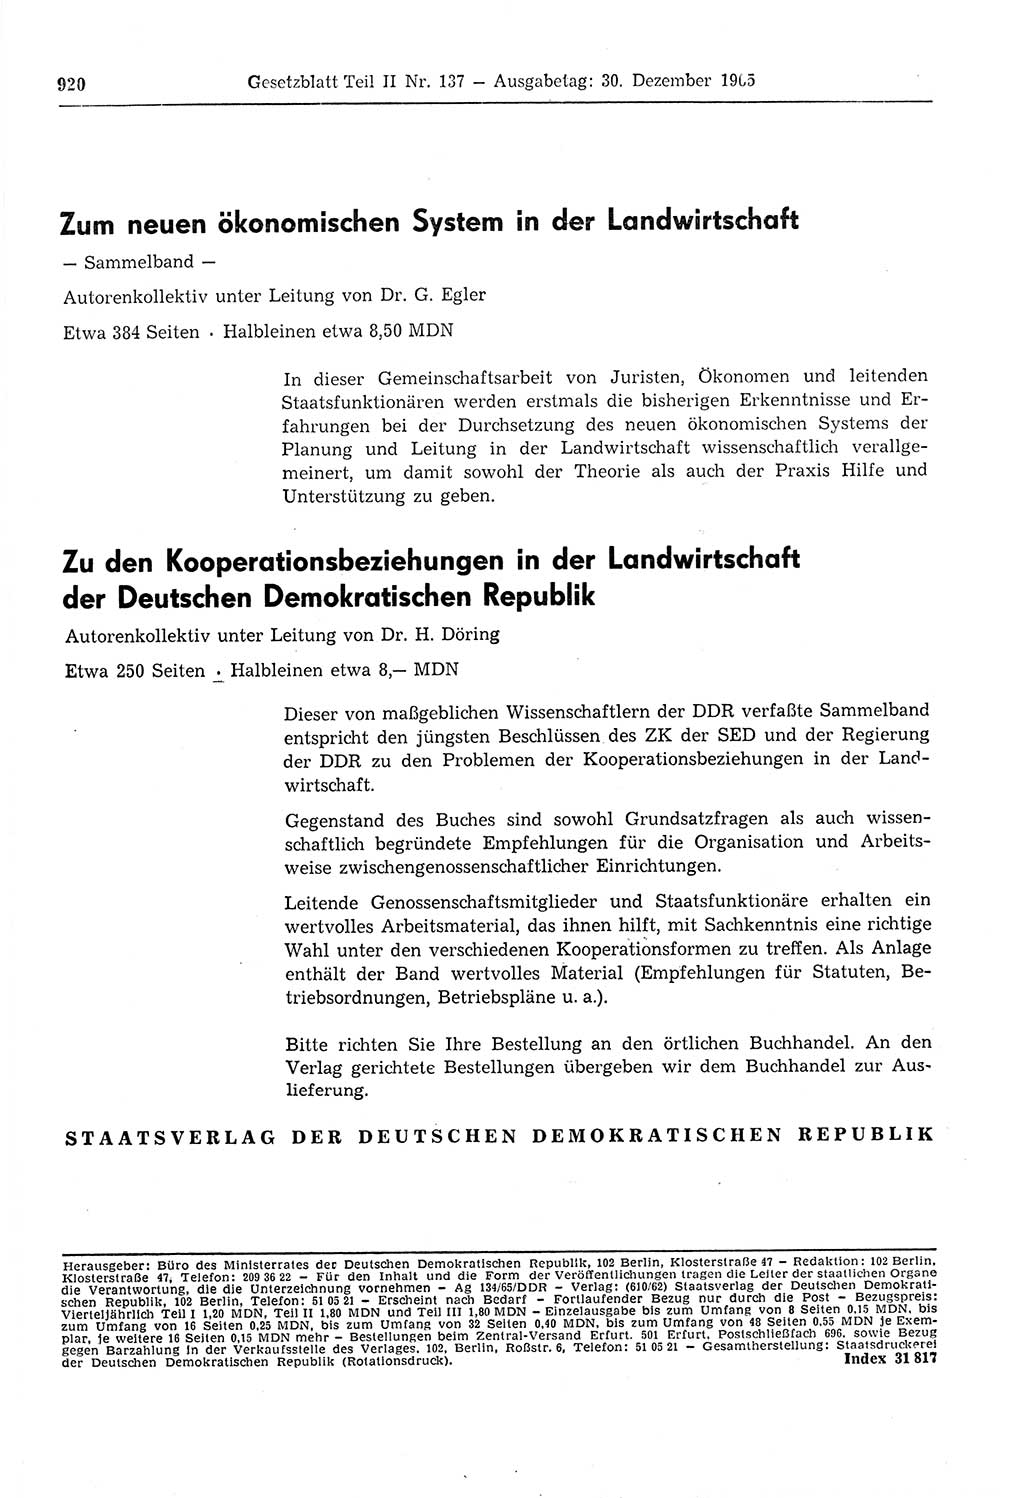 Gesetzblatt (GBl.) der Deutschen Demokratischen Republik (DDR) Teil ⅠⅠ 1965, Seite 920 (GBl. DDR ⅠⅠ 1965, S. 920)